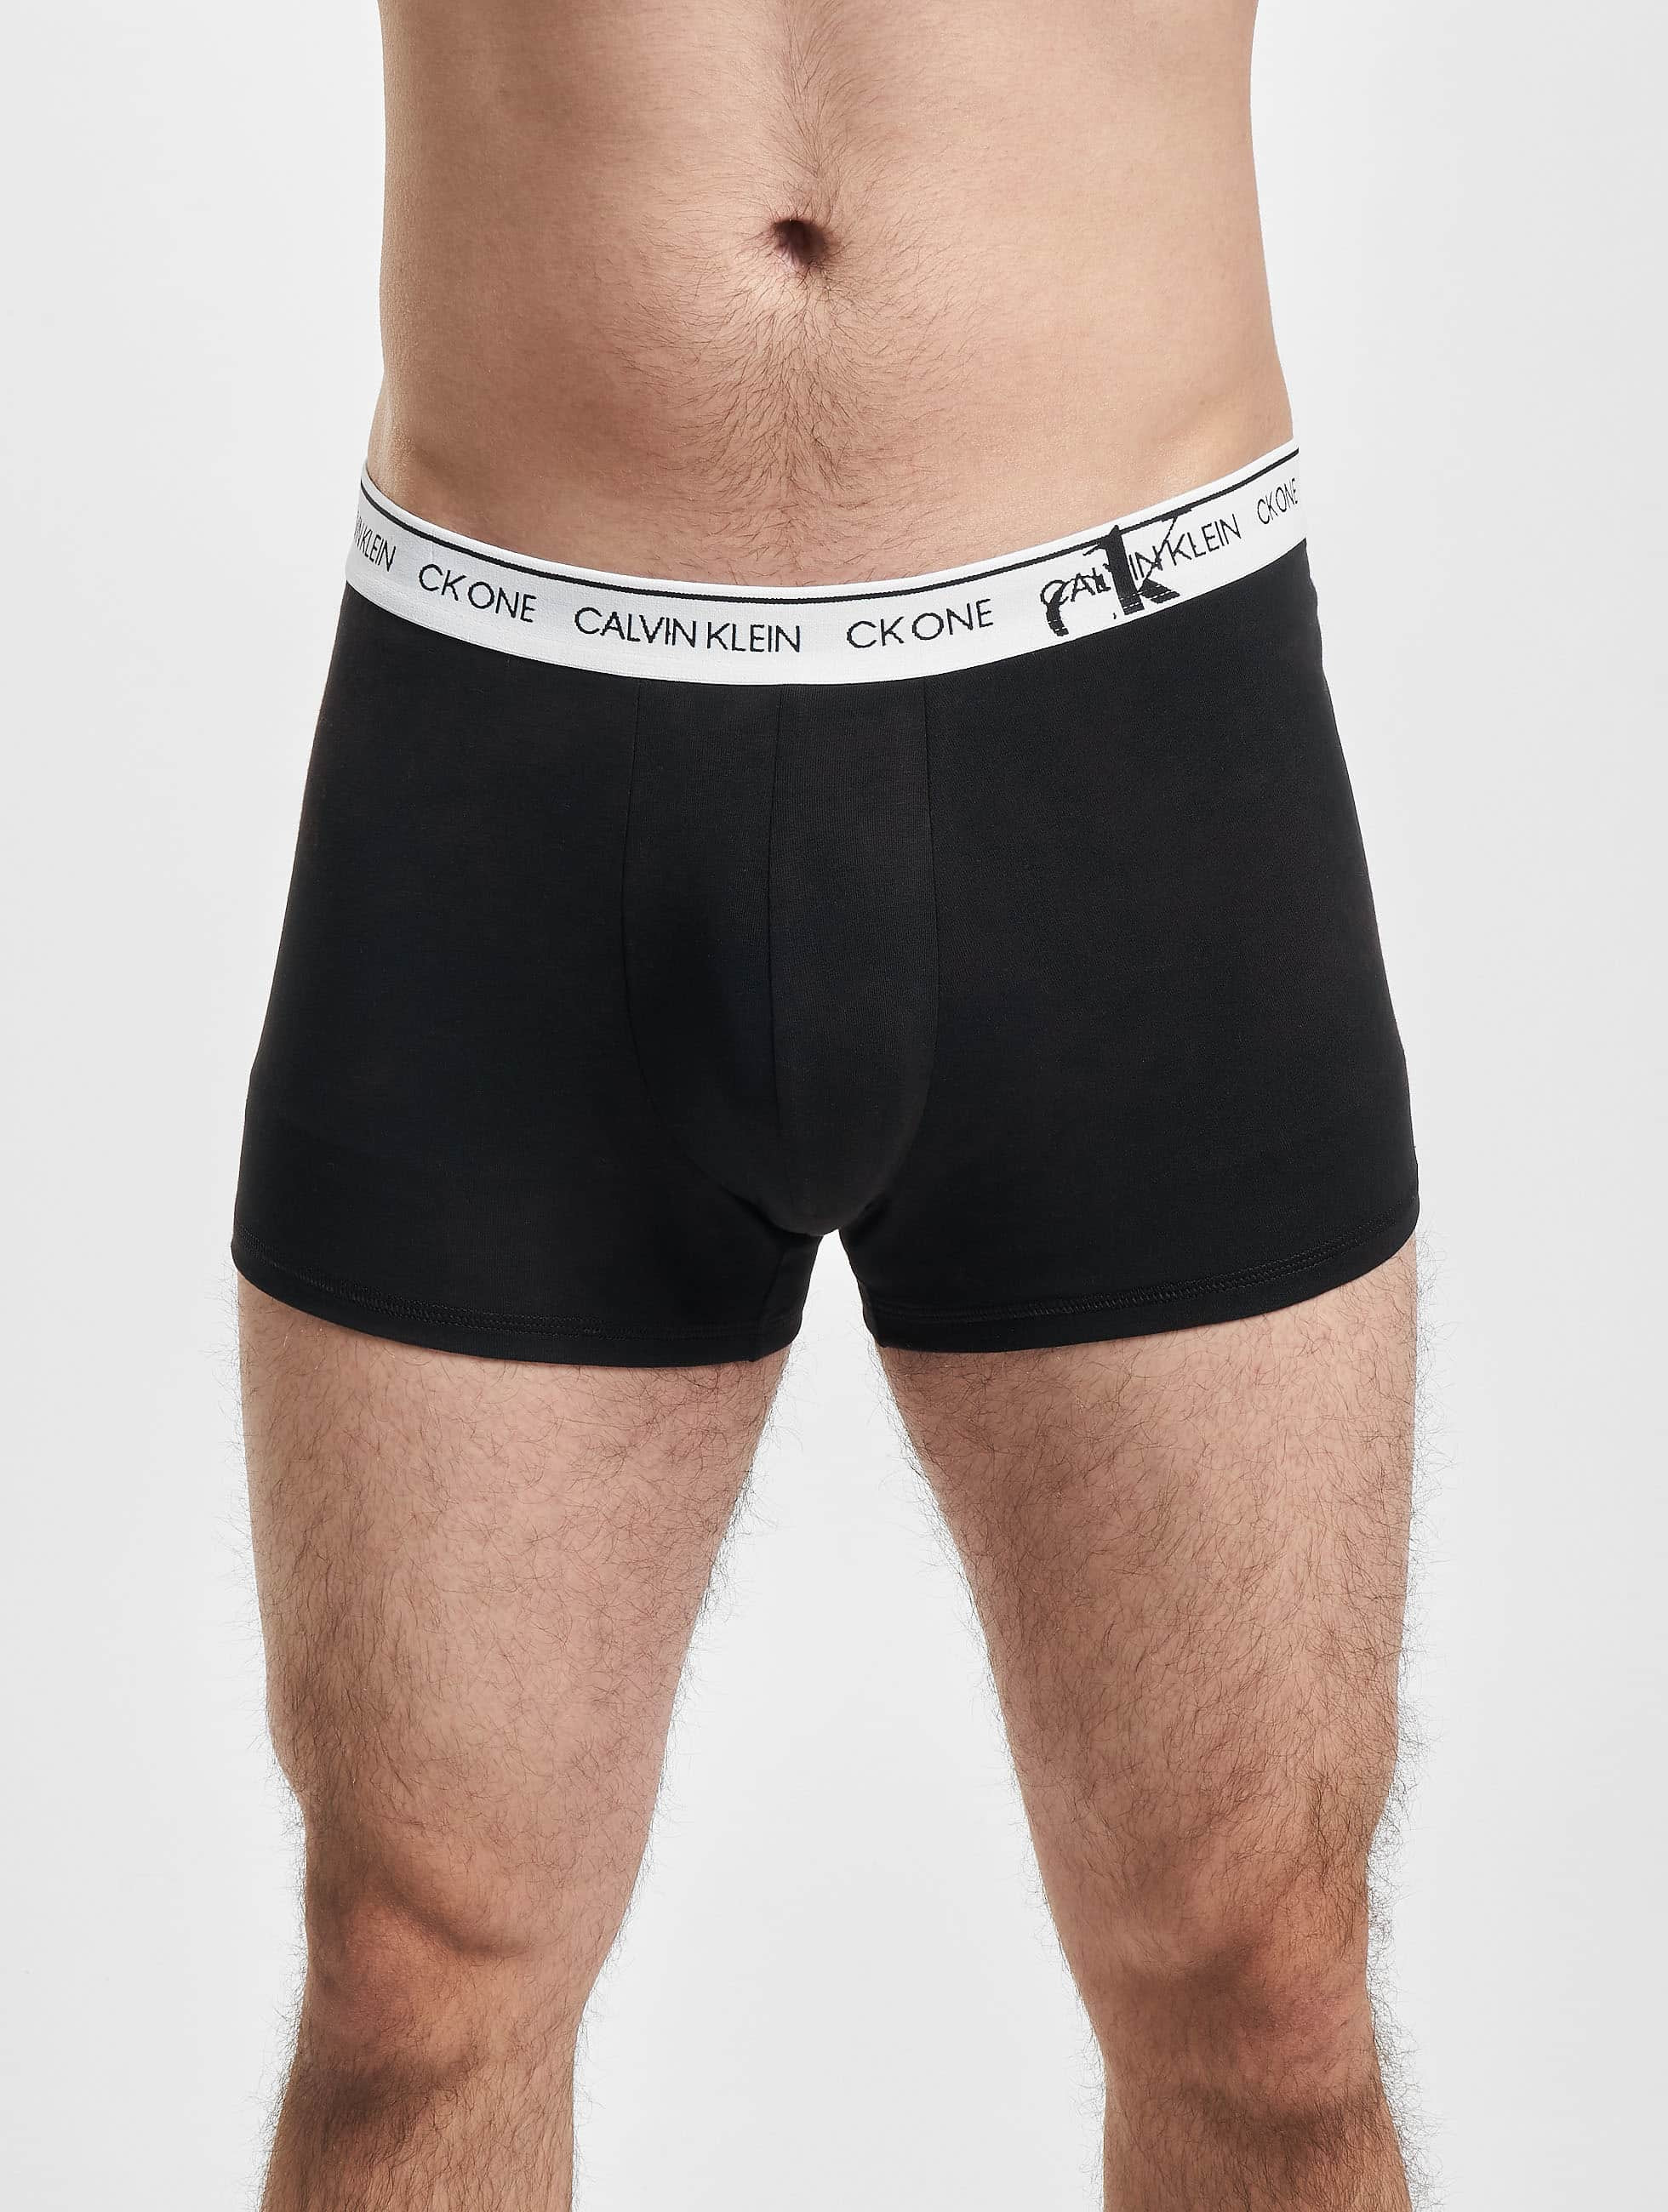 Calvin Klein Underwear / Beachwear / Boxer Short Underwear in black 972033